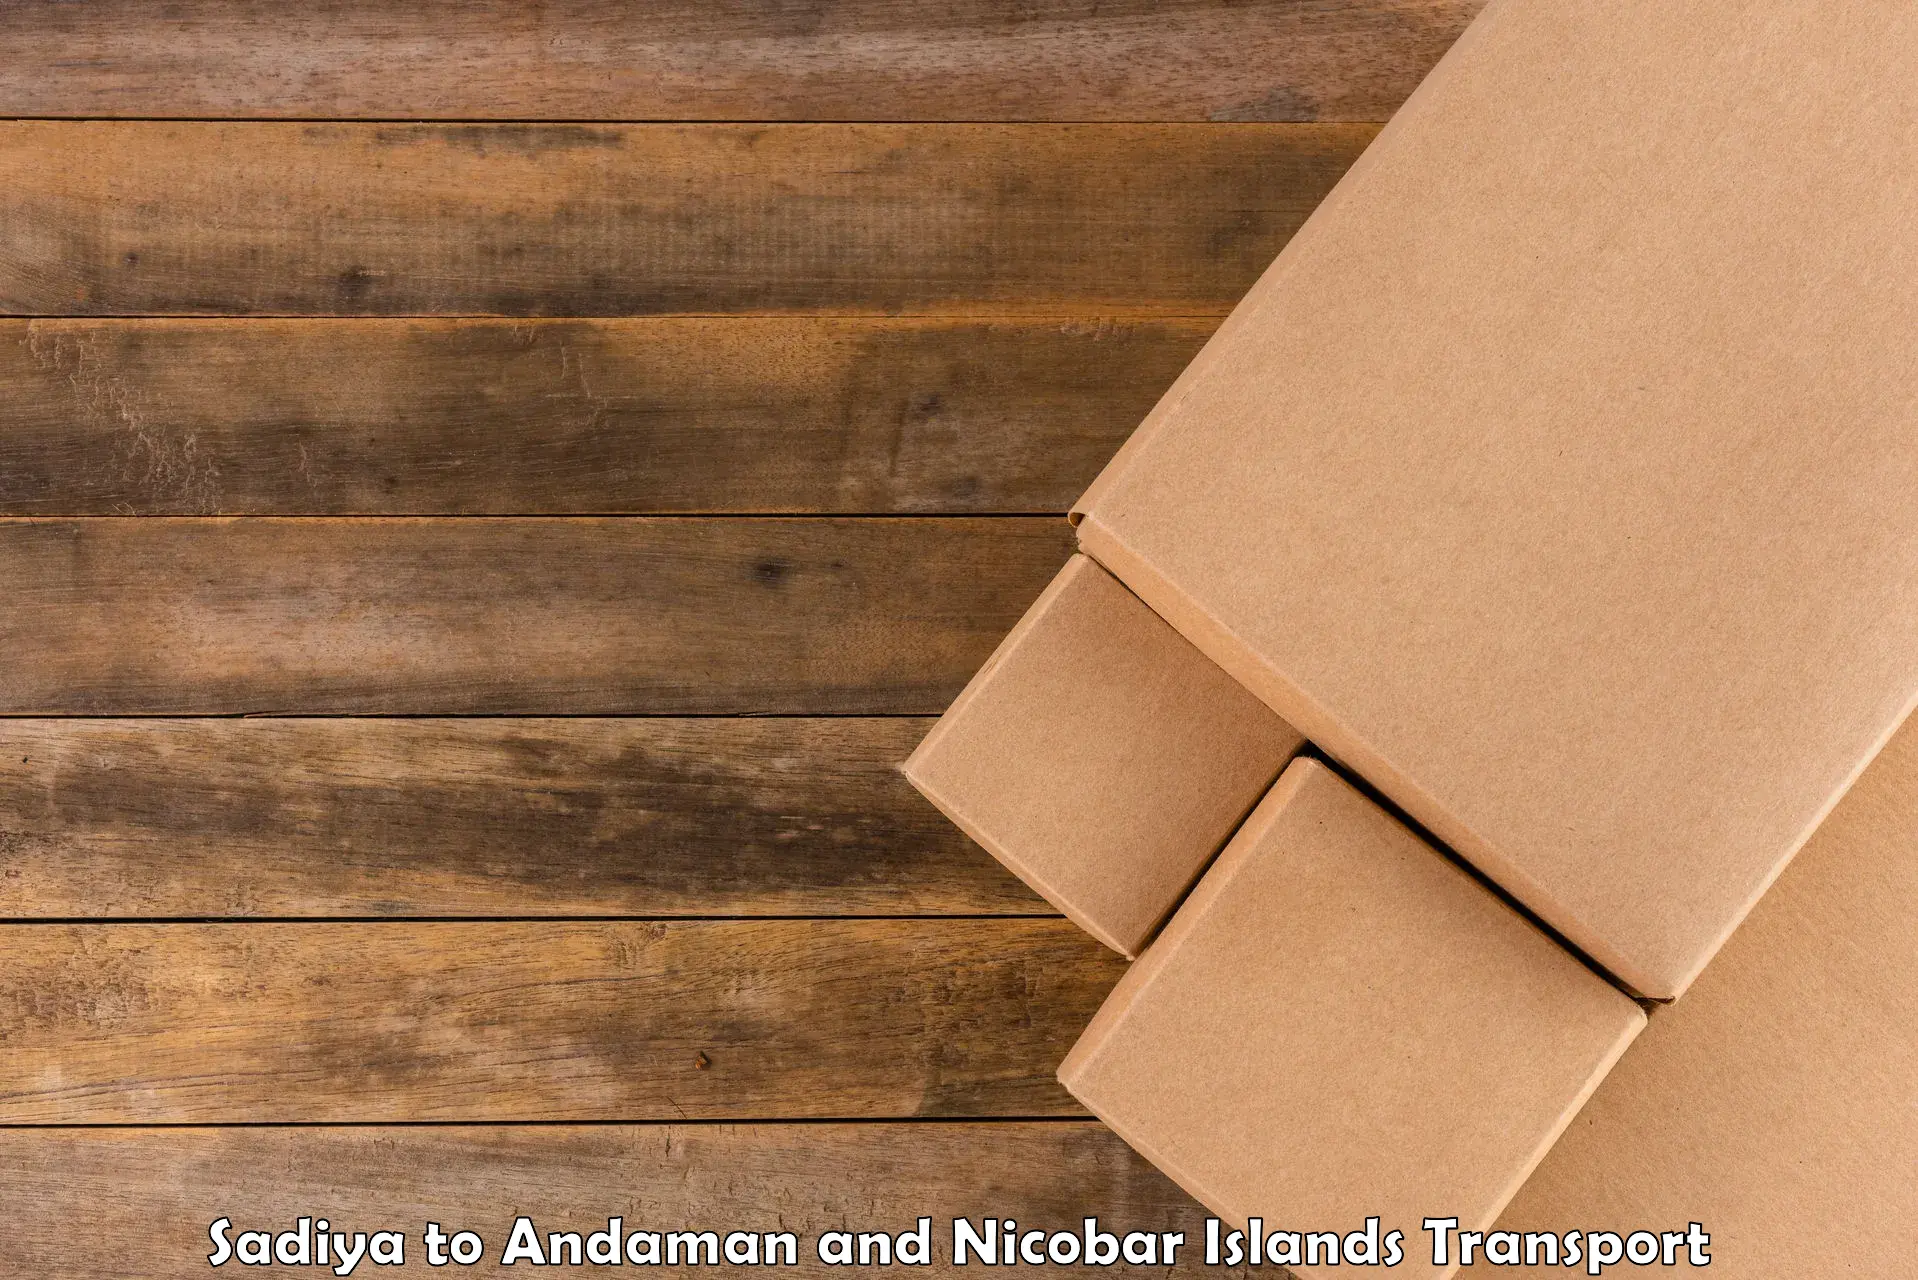 Cargo transport services Sadiya to Andaman and Nicobar Islands